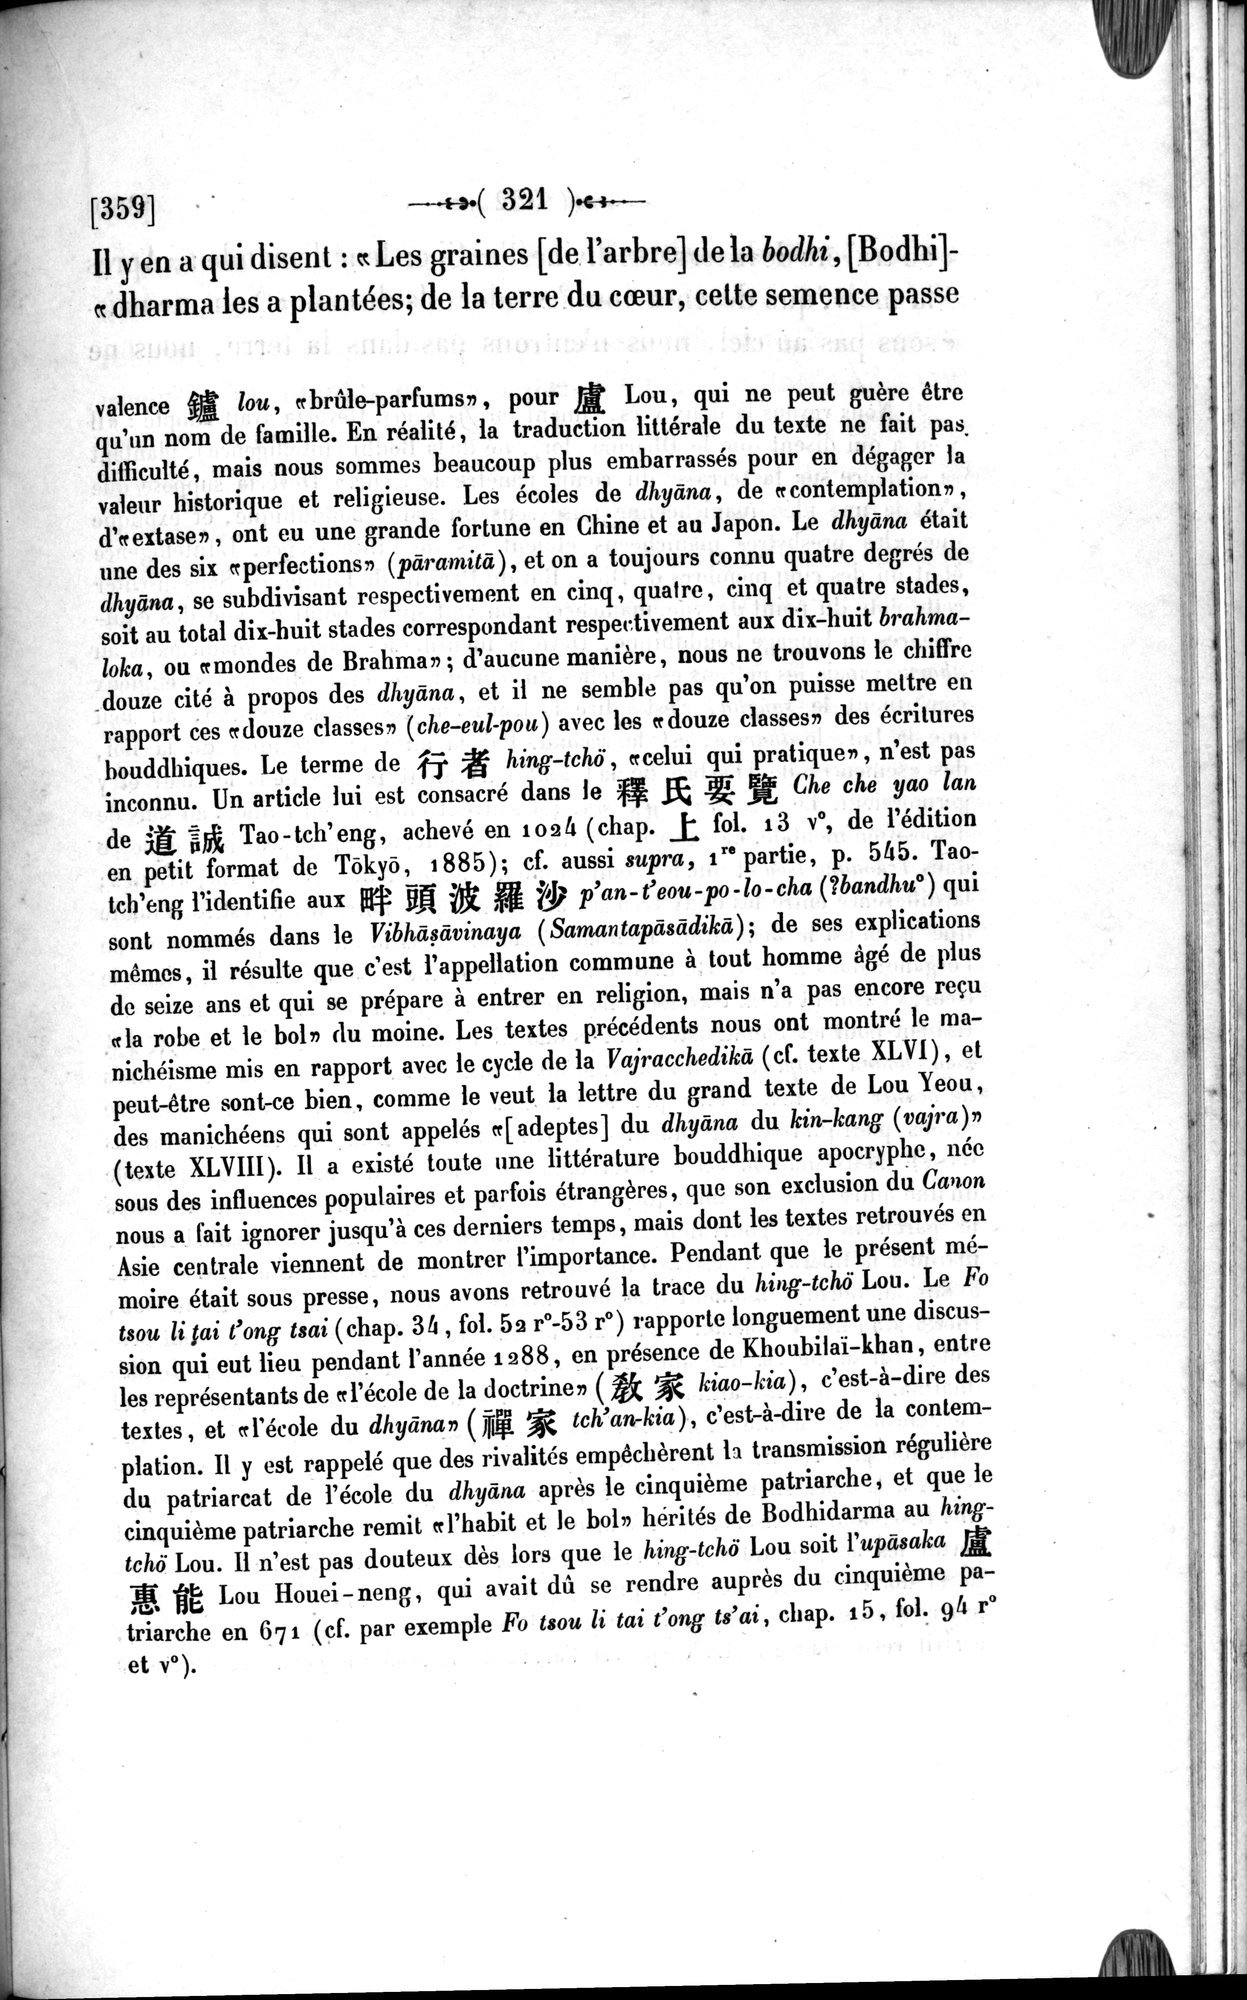 Un traité manichéen retrouvé en Chine : vol.1 / Page 331 (Grayscale High Resolution Image)